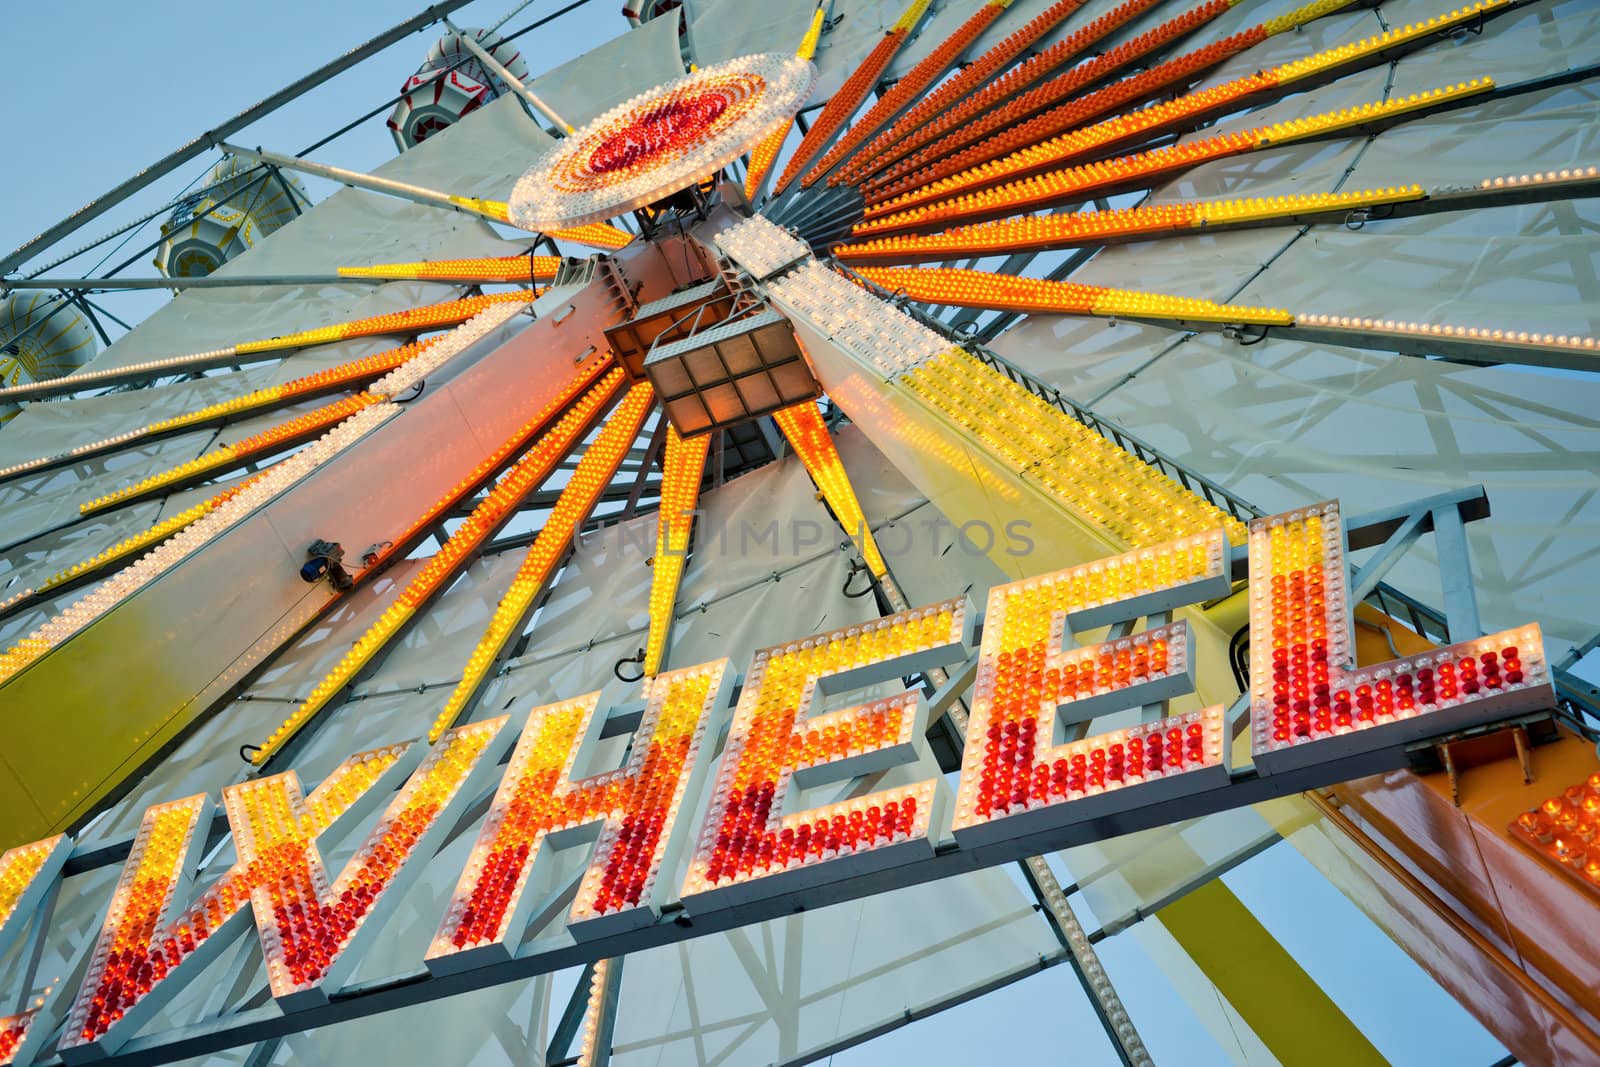 Ferris wheel with glowing letters "WHEEL" on it